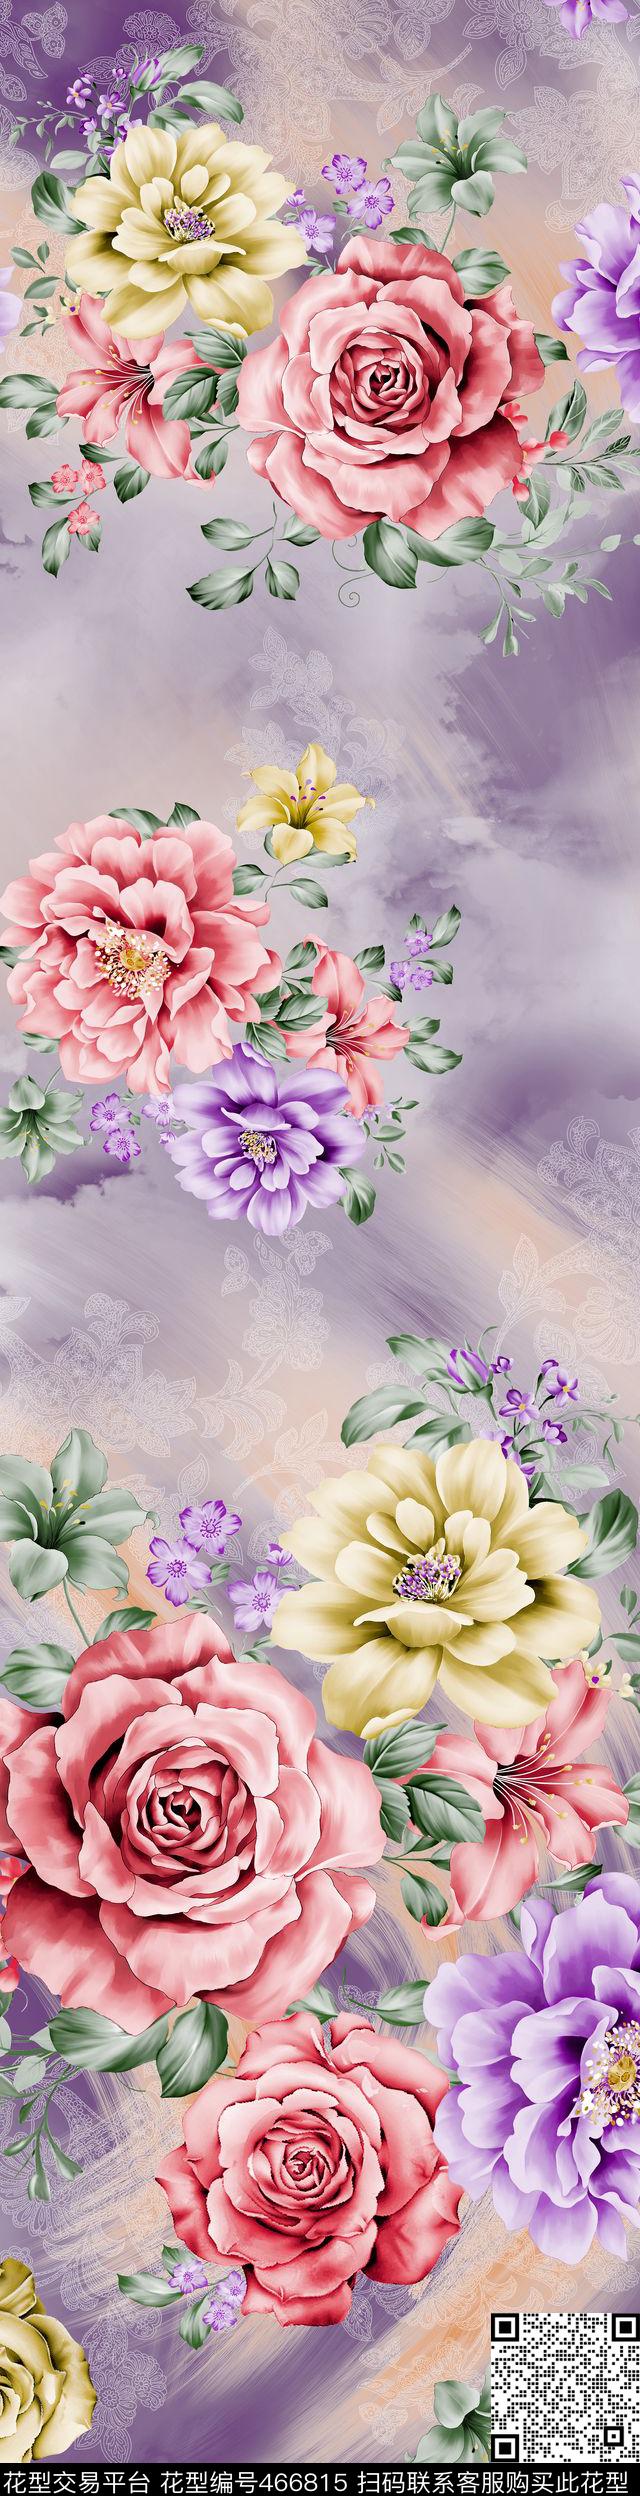 时尚窗帘花型 家纺花型 流行窗帘花型  - 466815 - 时尚窗帘花型 家纺花型 流行窗帘花型 - 传统印花花型 － 窗帘花型设计 － 瓦栏